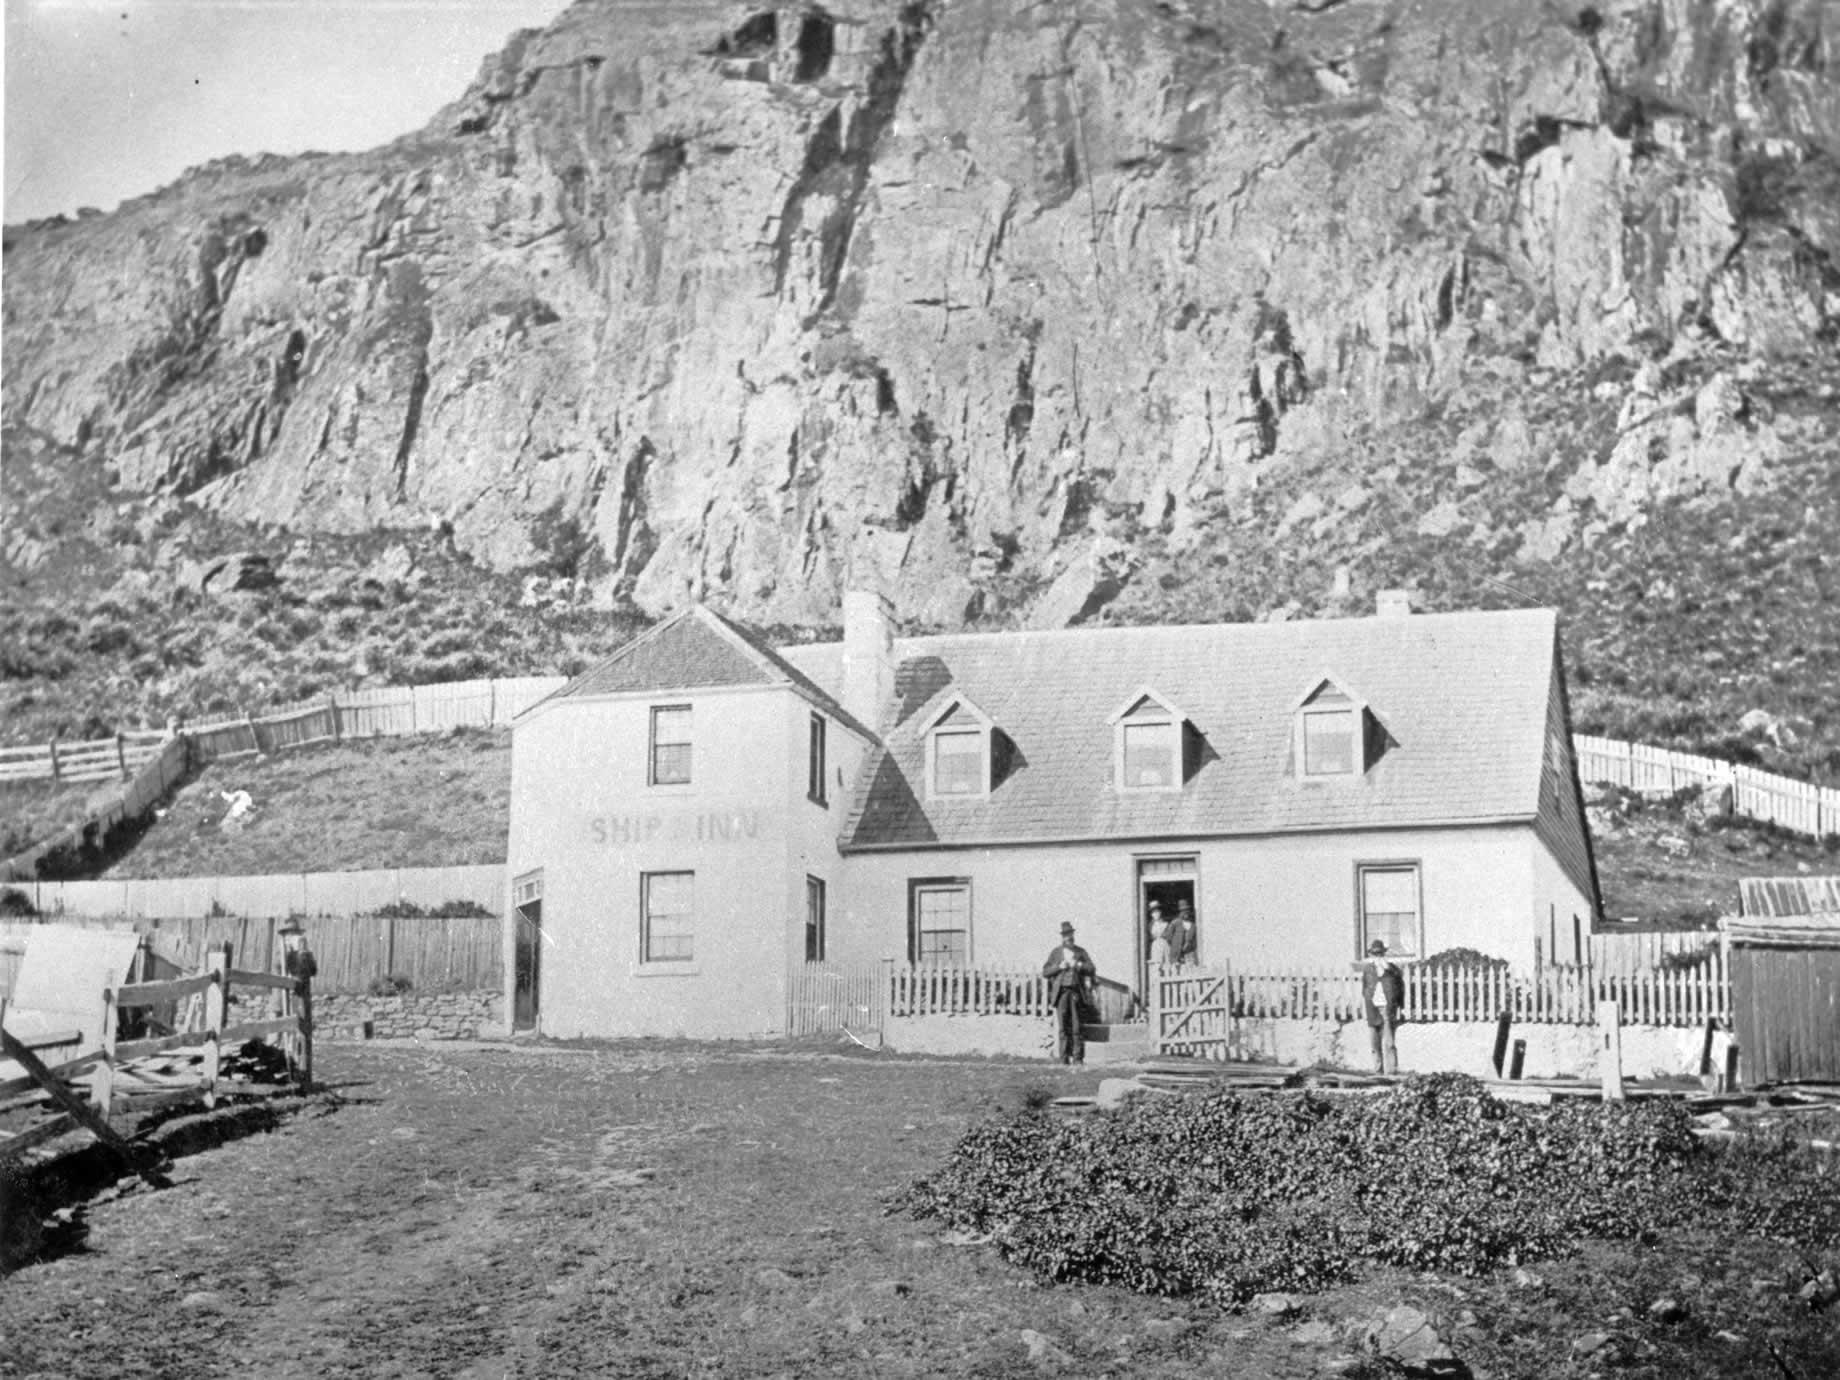 Das Ship Inn, erstmals im Jahre 1849 eröffnet, wurde 1903 verkauft und in Bay View Hotel umbenannt 